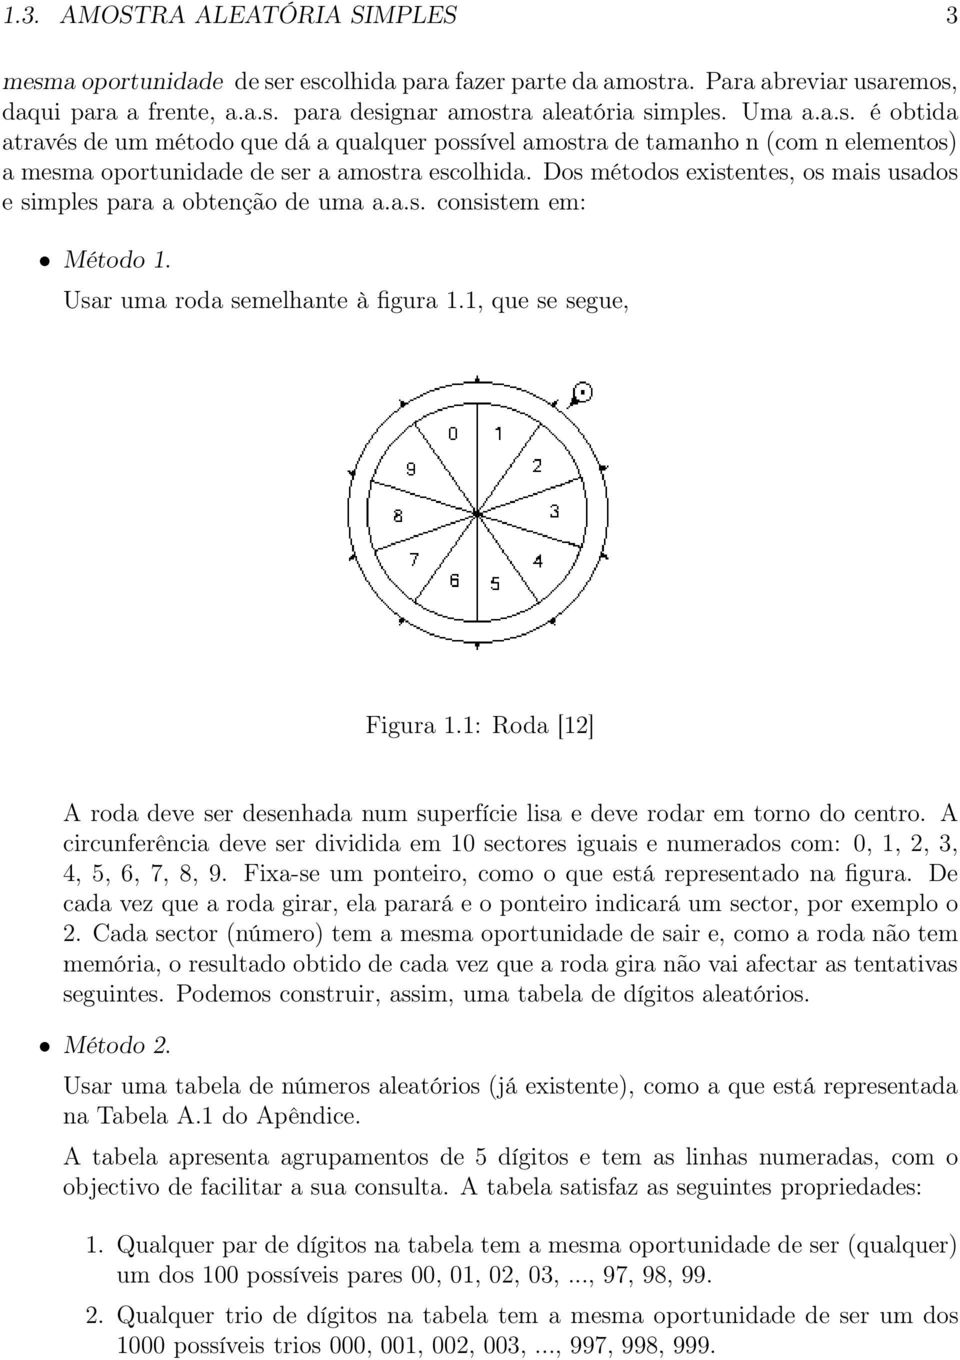 1: Roda [12] A roda deve ser desenhada num superfície lisa e deve rodar em torno do centro. A circunferência deve ser dividida em 10 sectores iguais e numerados com: 0, 1, 2, 3, 4, 5, 6, 7, 8, 9.